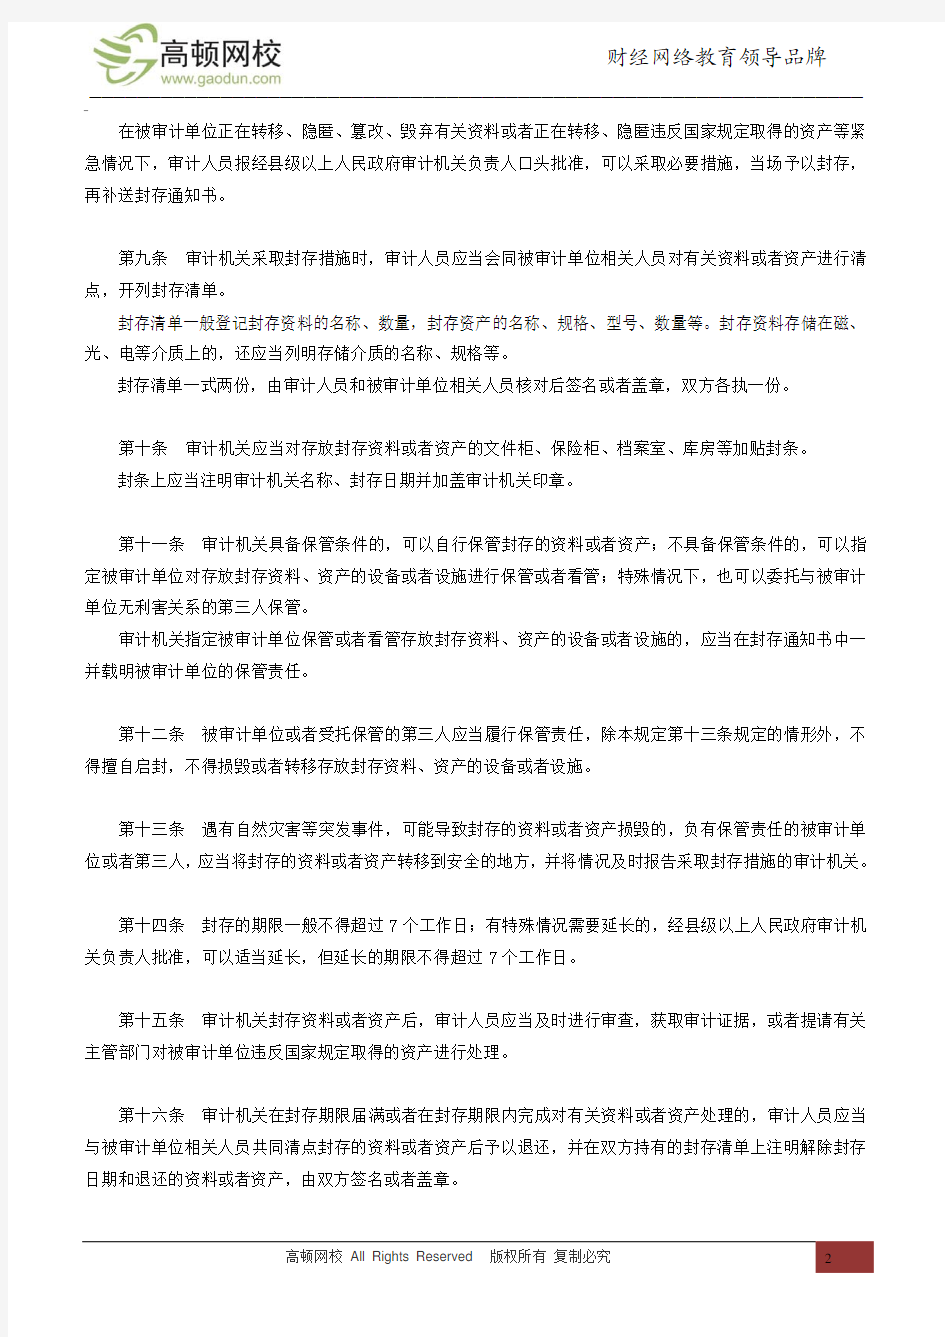 中华人民共和国审计署令第9号